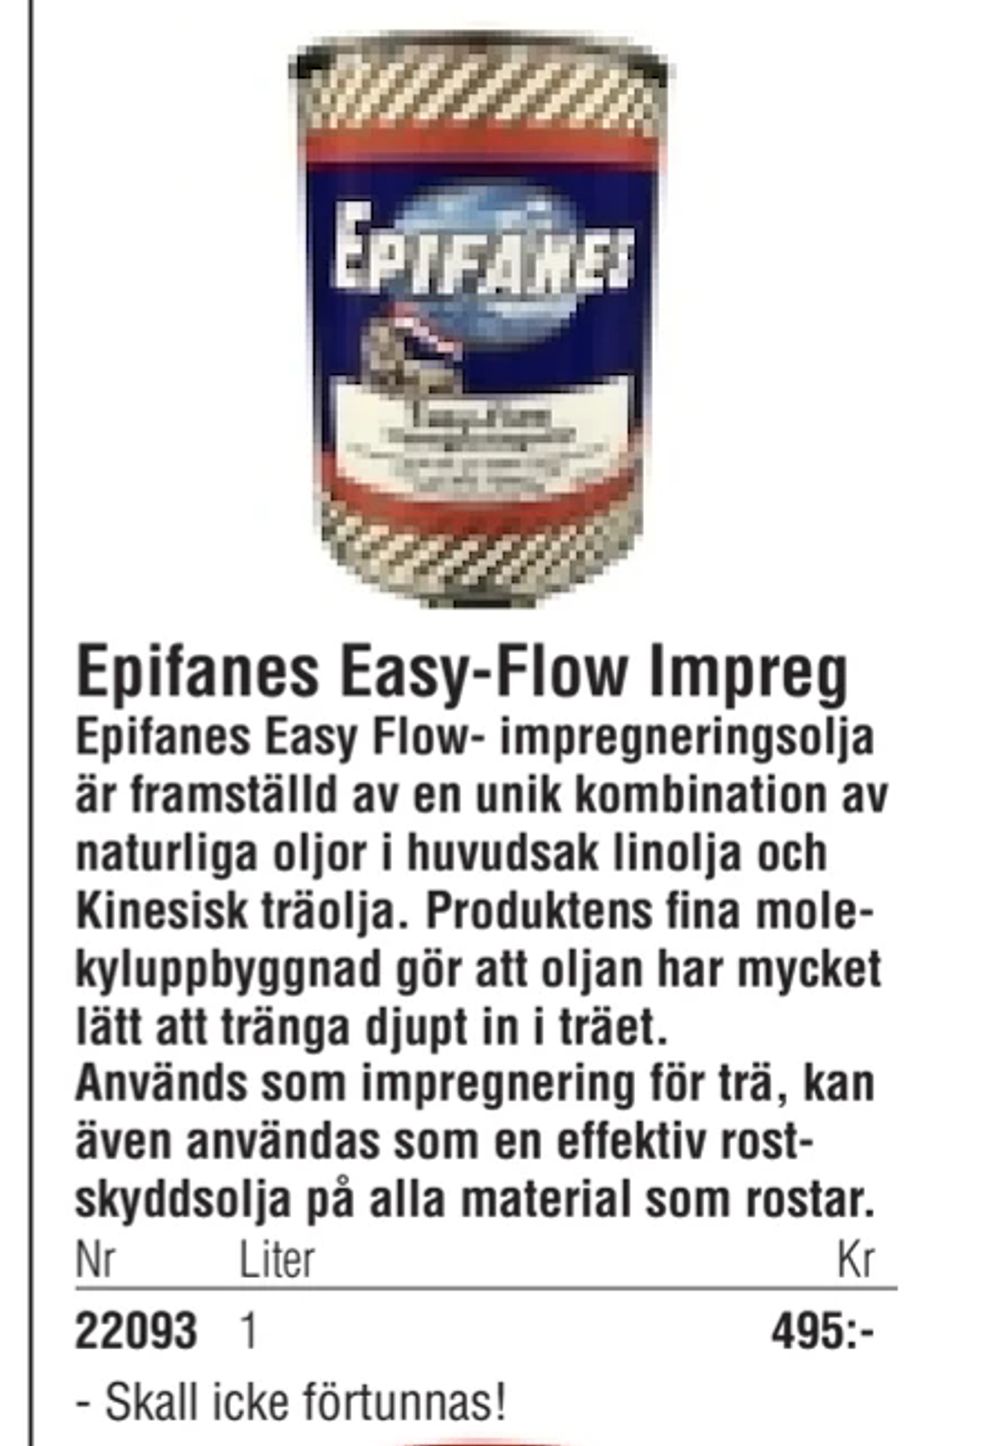 Erbjudanden på Epifanes Easy-Flow Impreg från Erlandsons Brygga för 495 kr